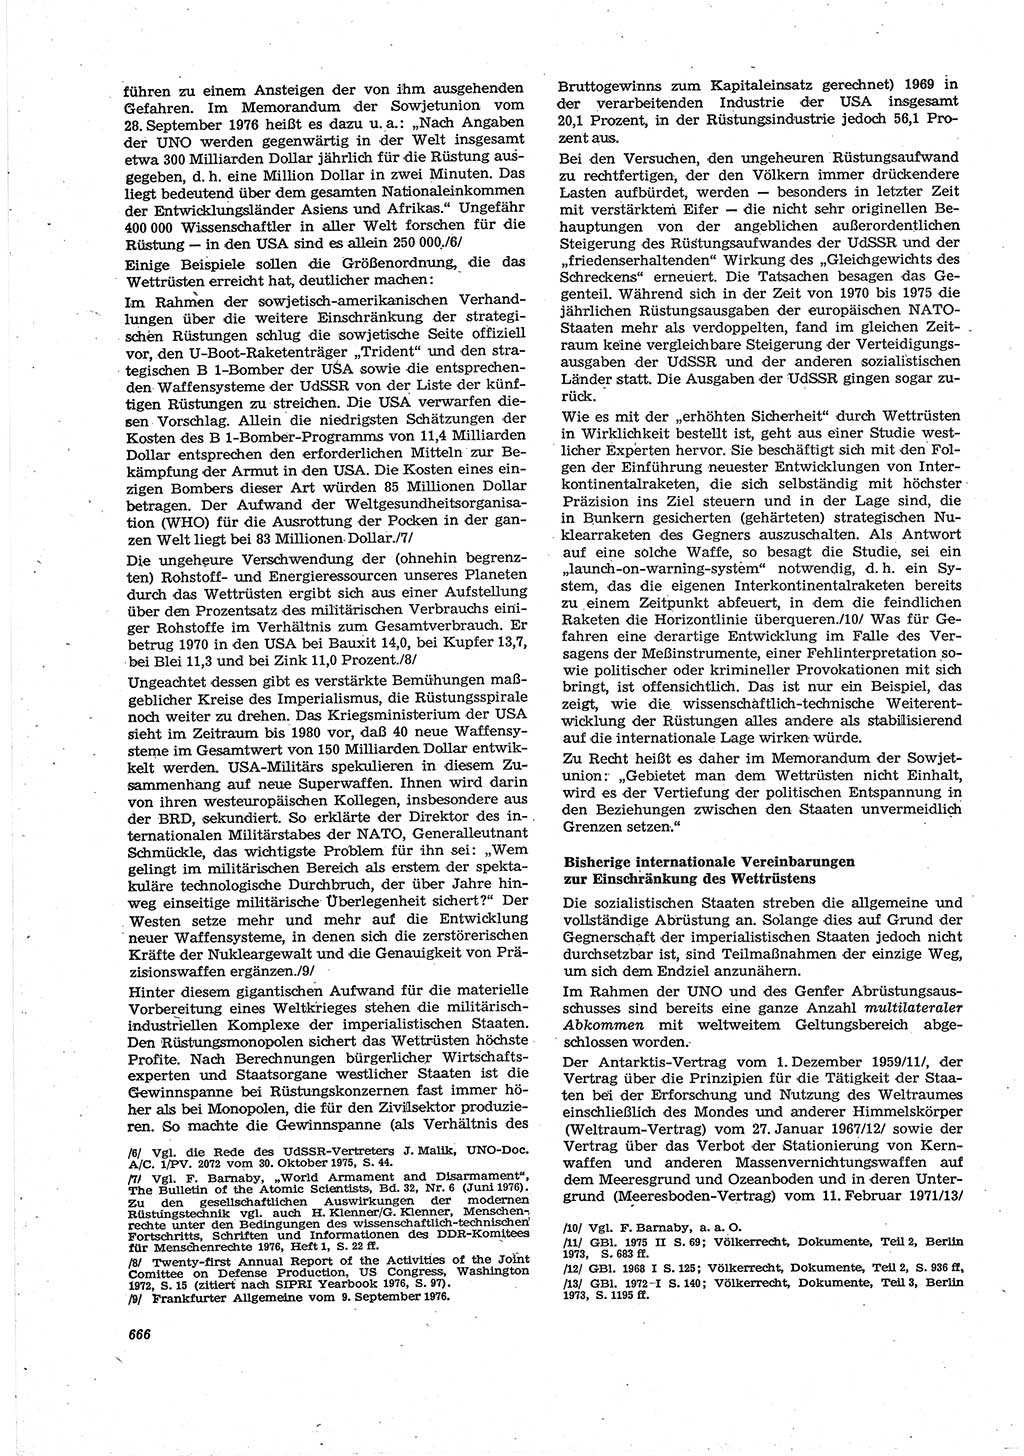 Neue Justiz (NJ), Zeitschrift für Recht und Rechtswissenschaft [Deutsche Demokratische Republik (DDR)], 30. Jahrgang 1976, Seite 666 (NJ DDR 1976, S. 666)